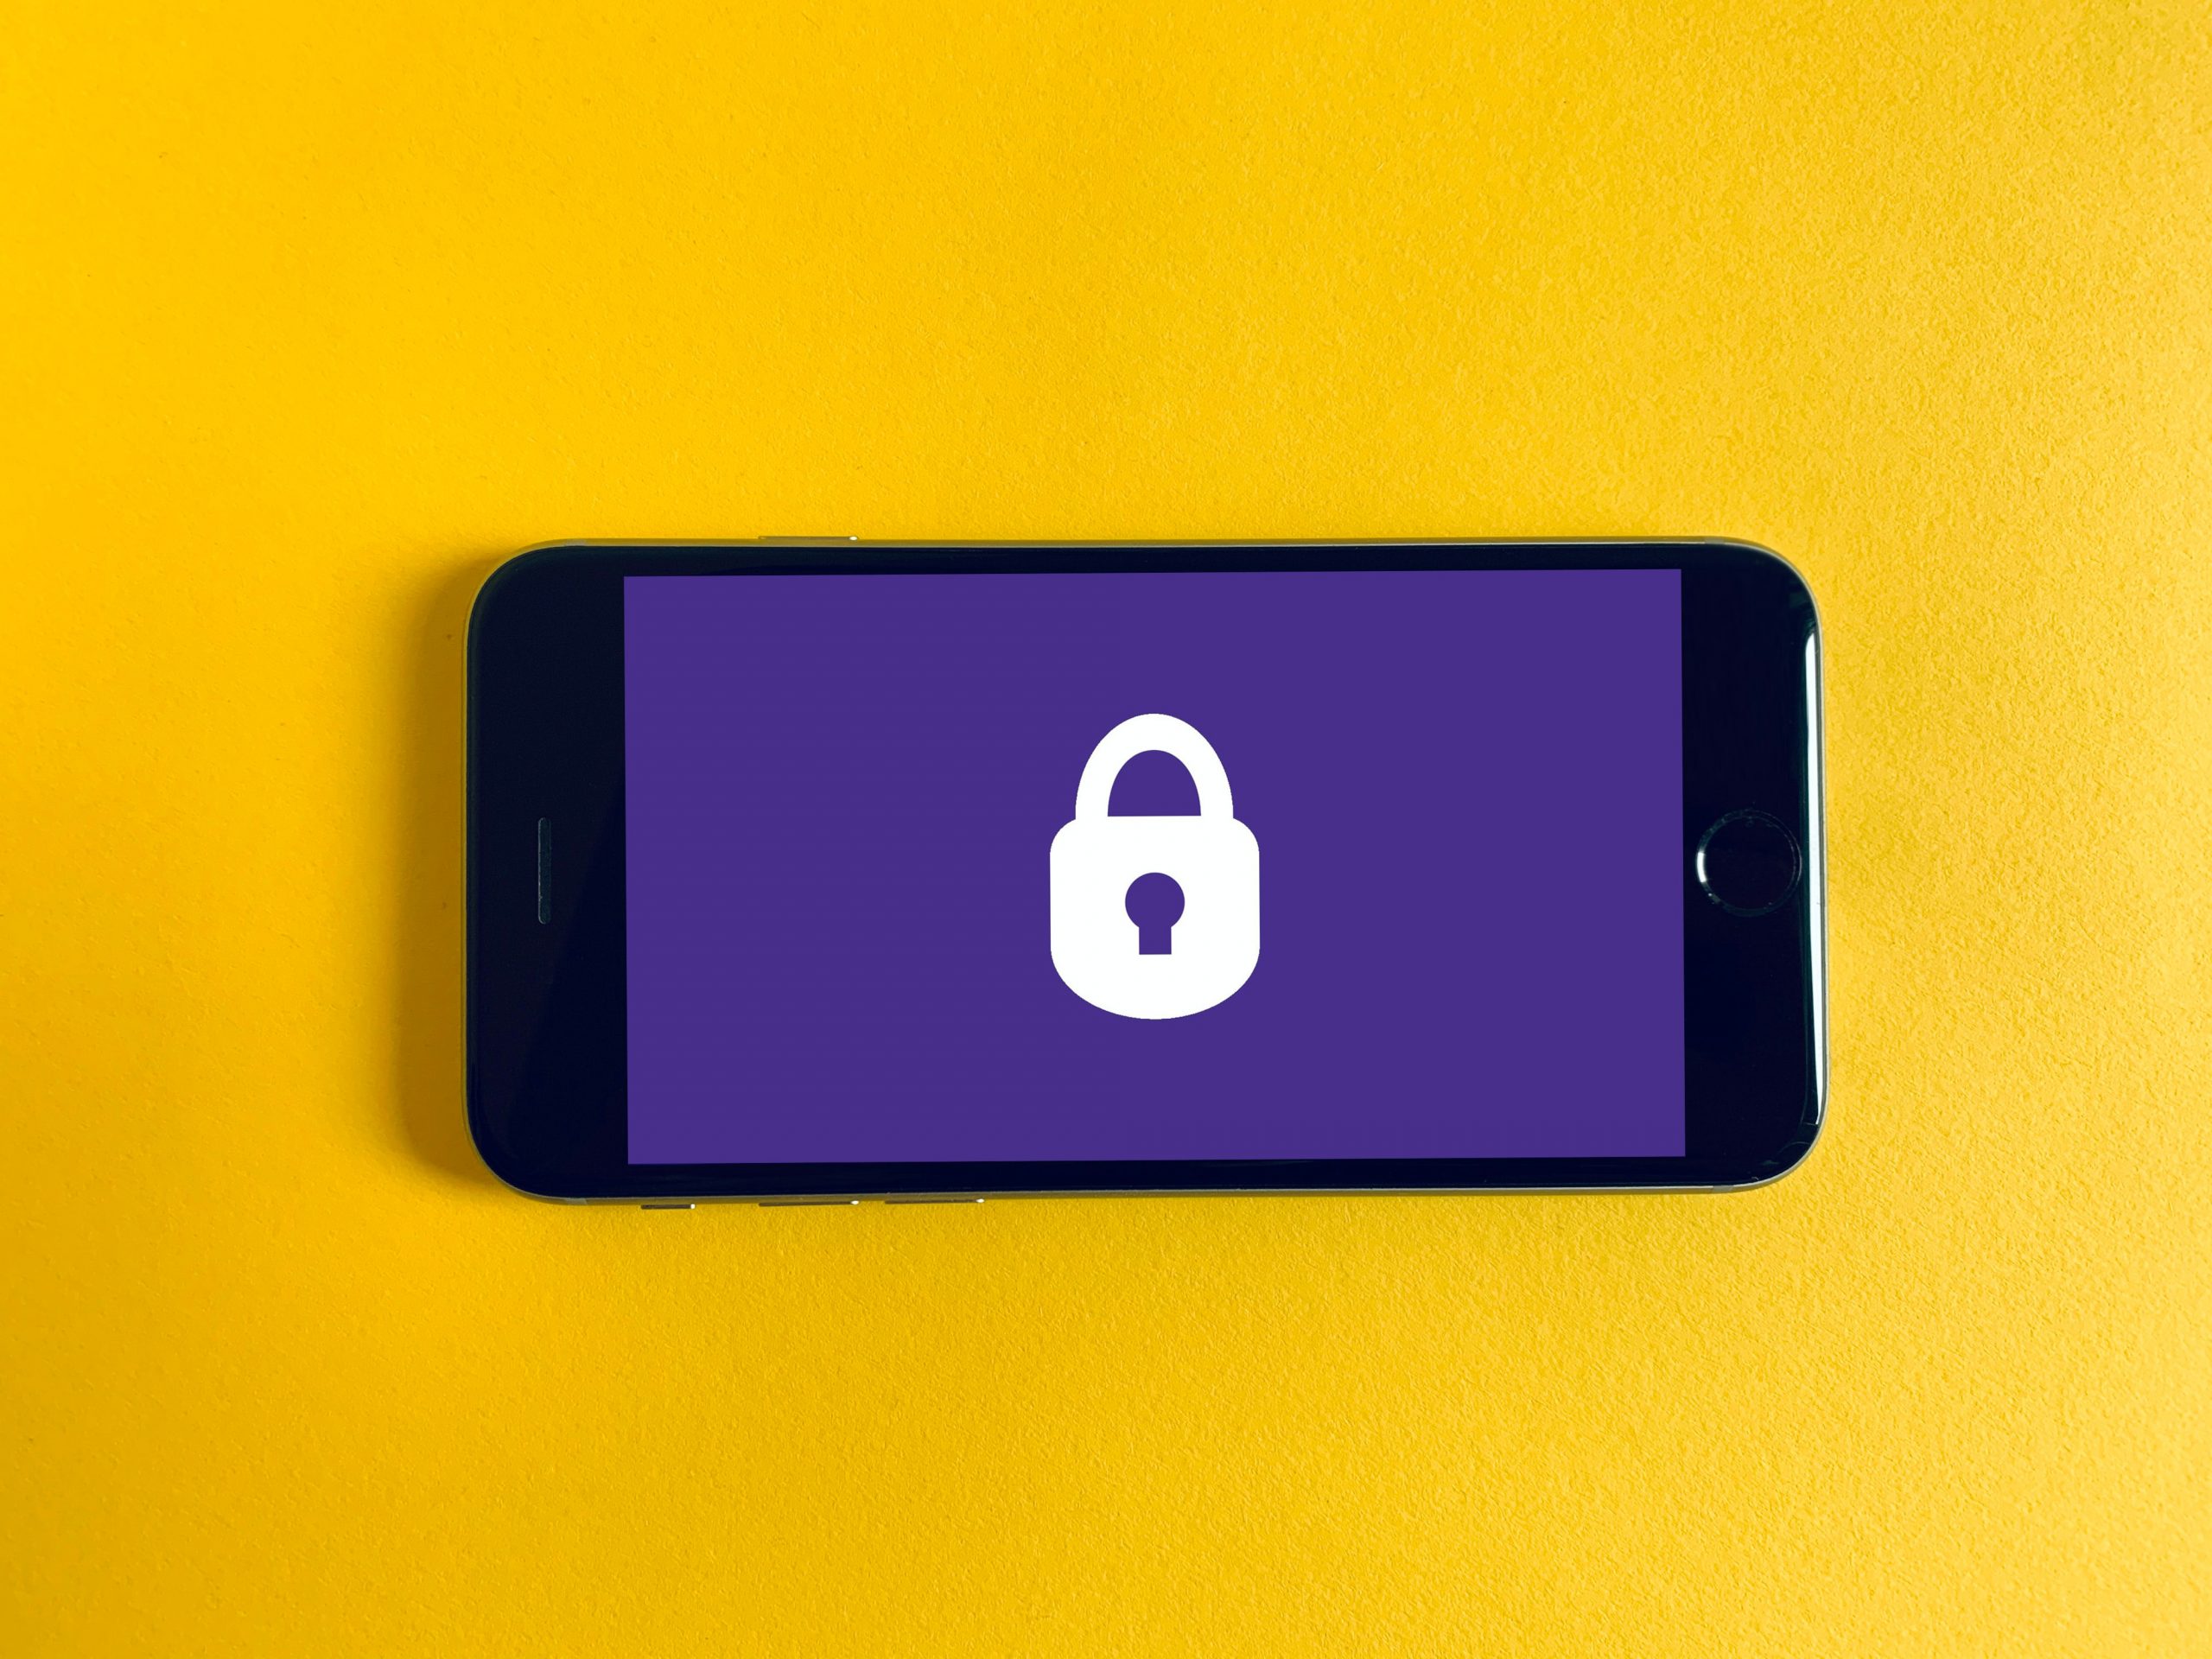 Mobiltelefon mit Vorhängeschlossdarstellung auf gelbem Hintergrund. Symbolisiert Datensicherheit.